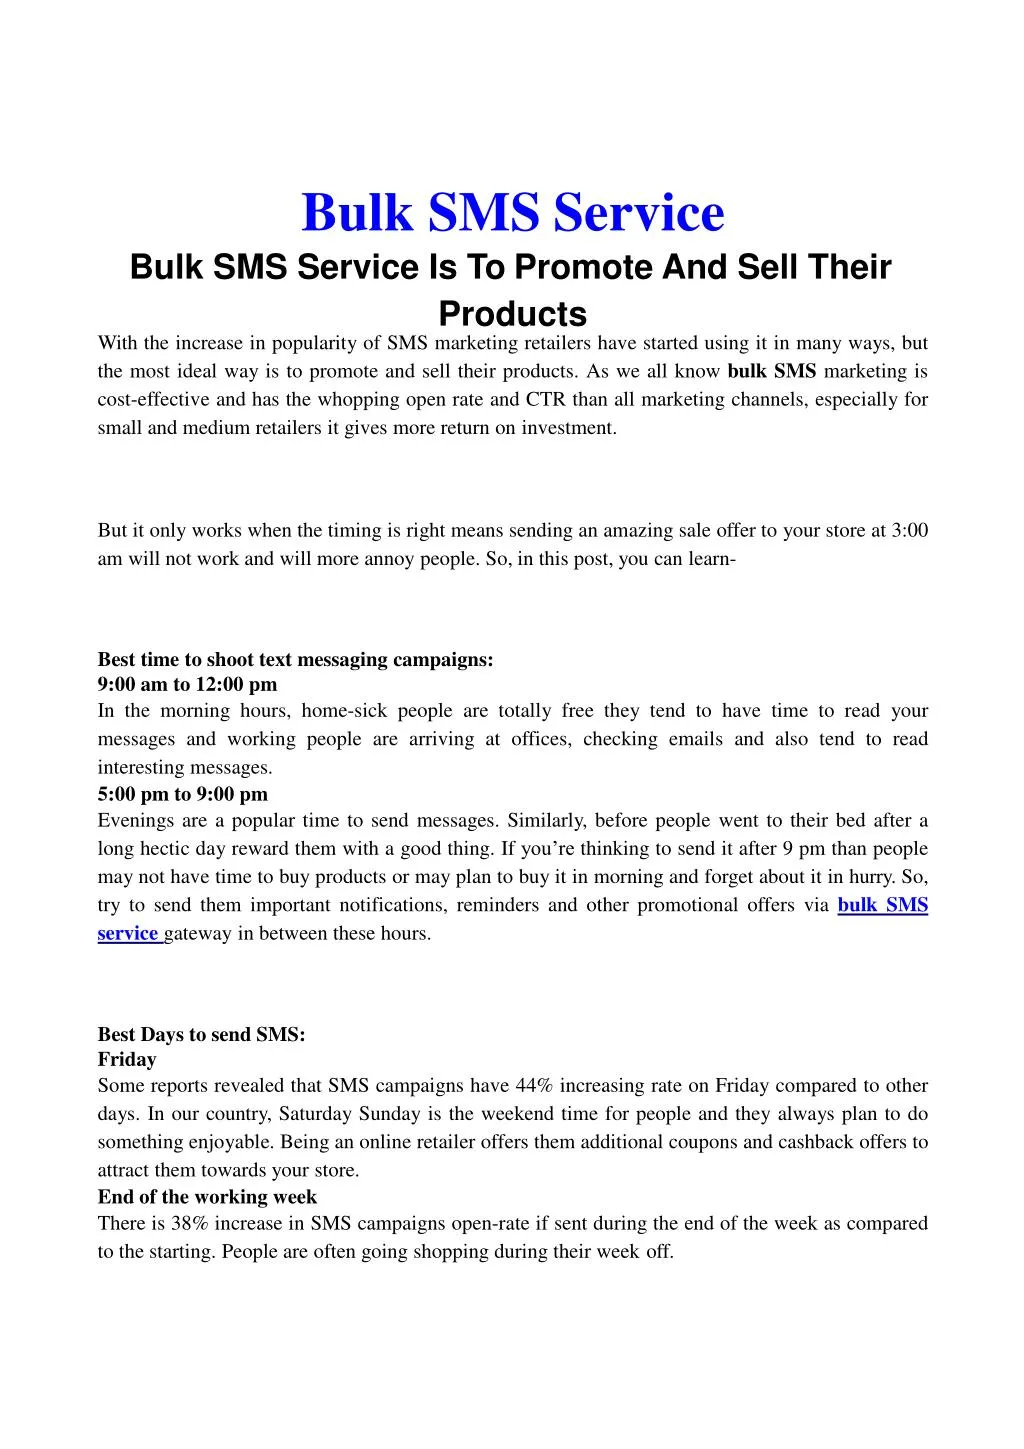 bulk sms service bulk sms service is to promote